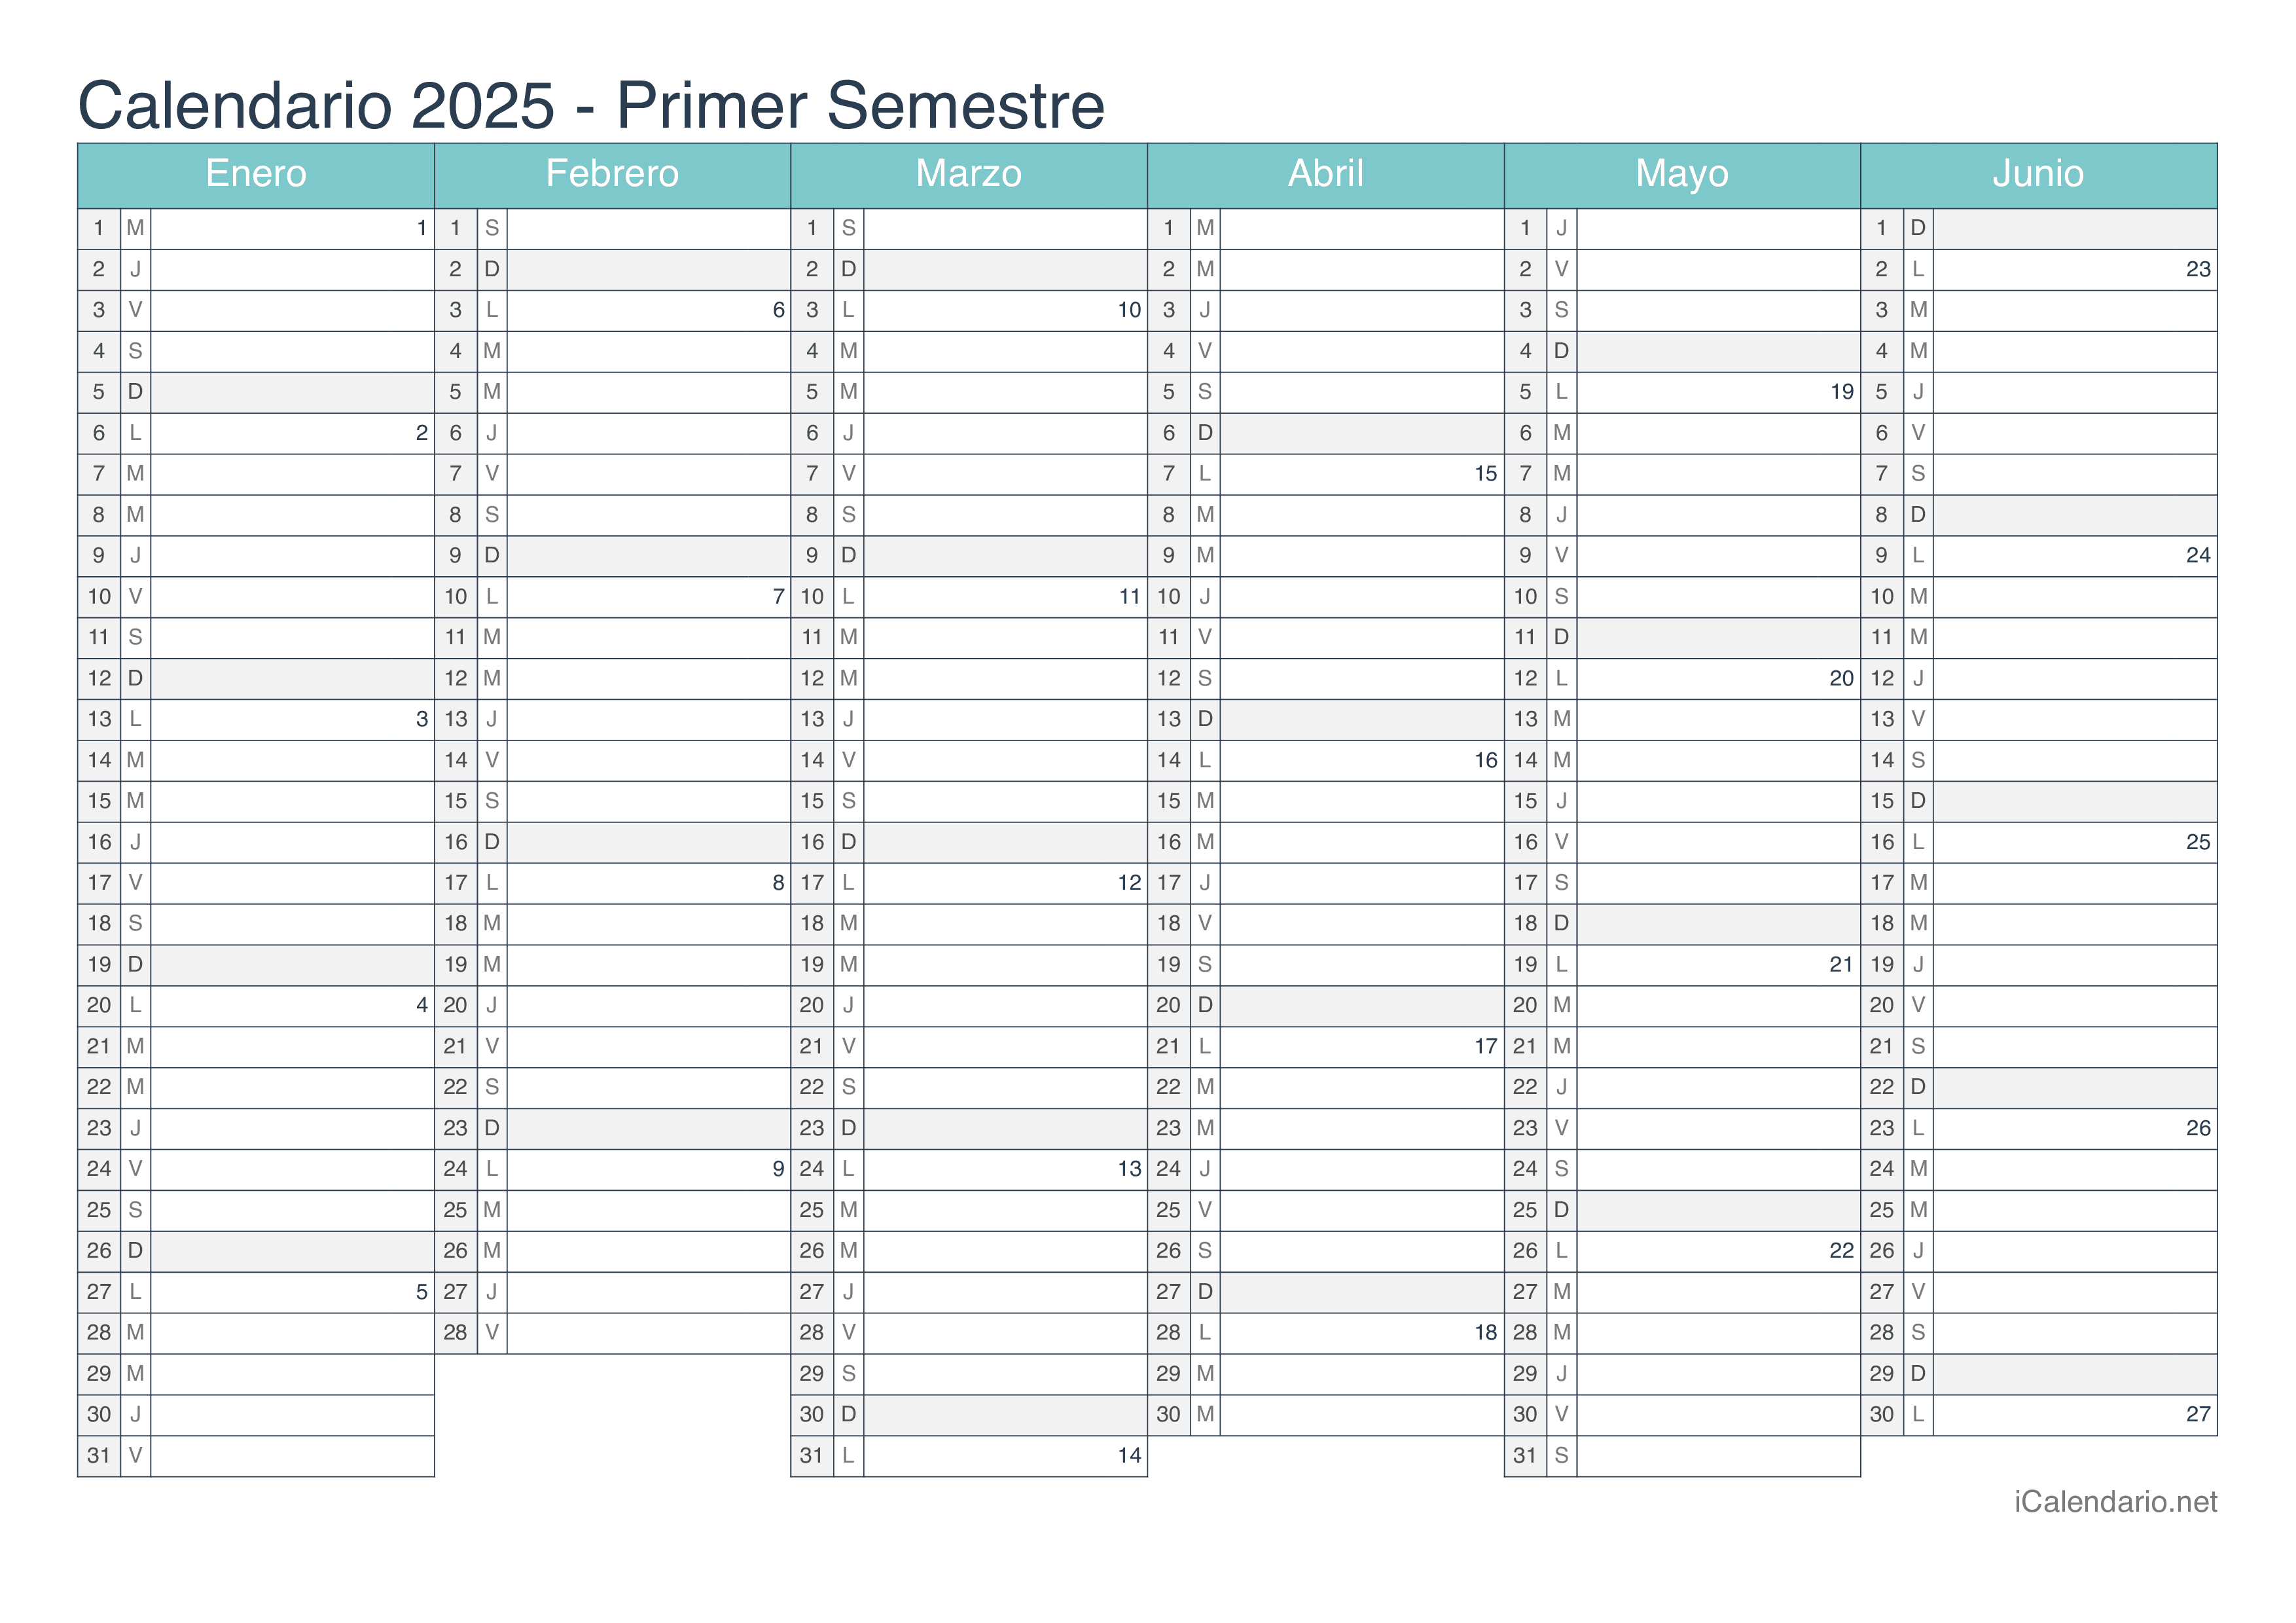 Calendario por semestre com números da semana 2025 - Turquesa